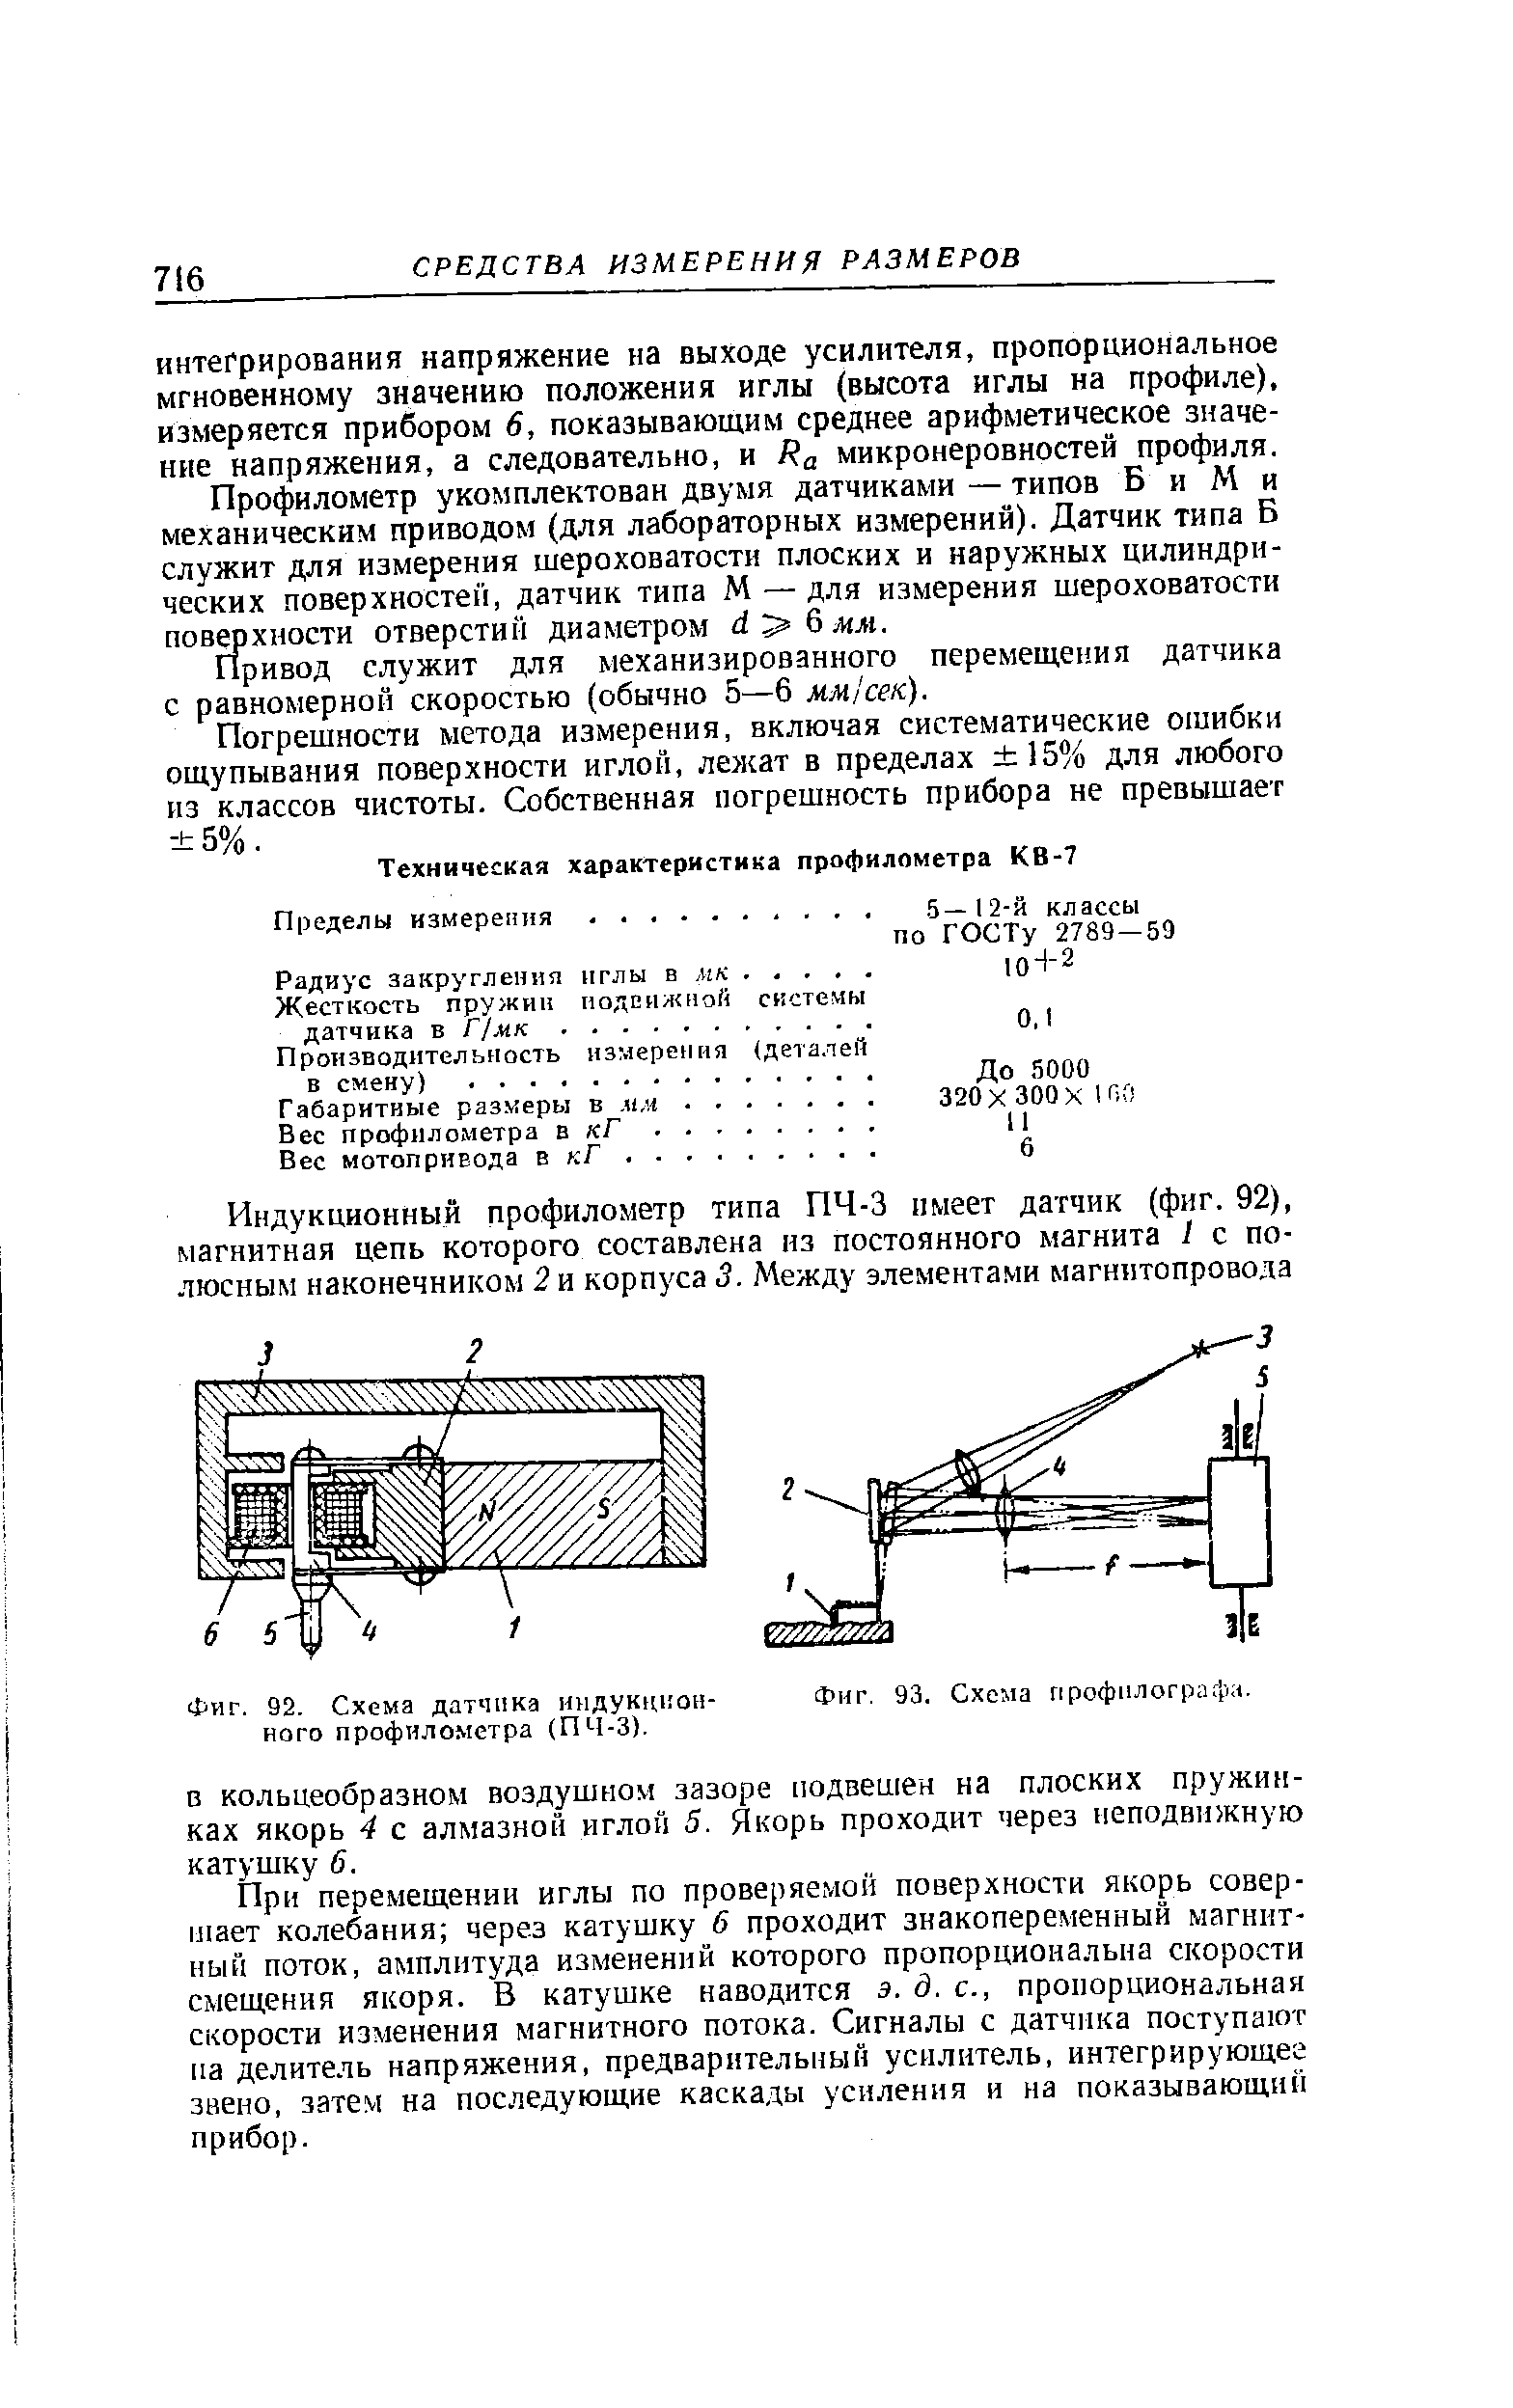 Фиг. 92. Схема датчика индукционного профилометра (ПЧ-3).
